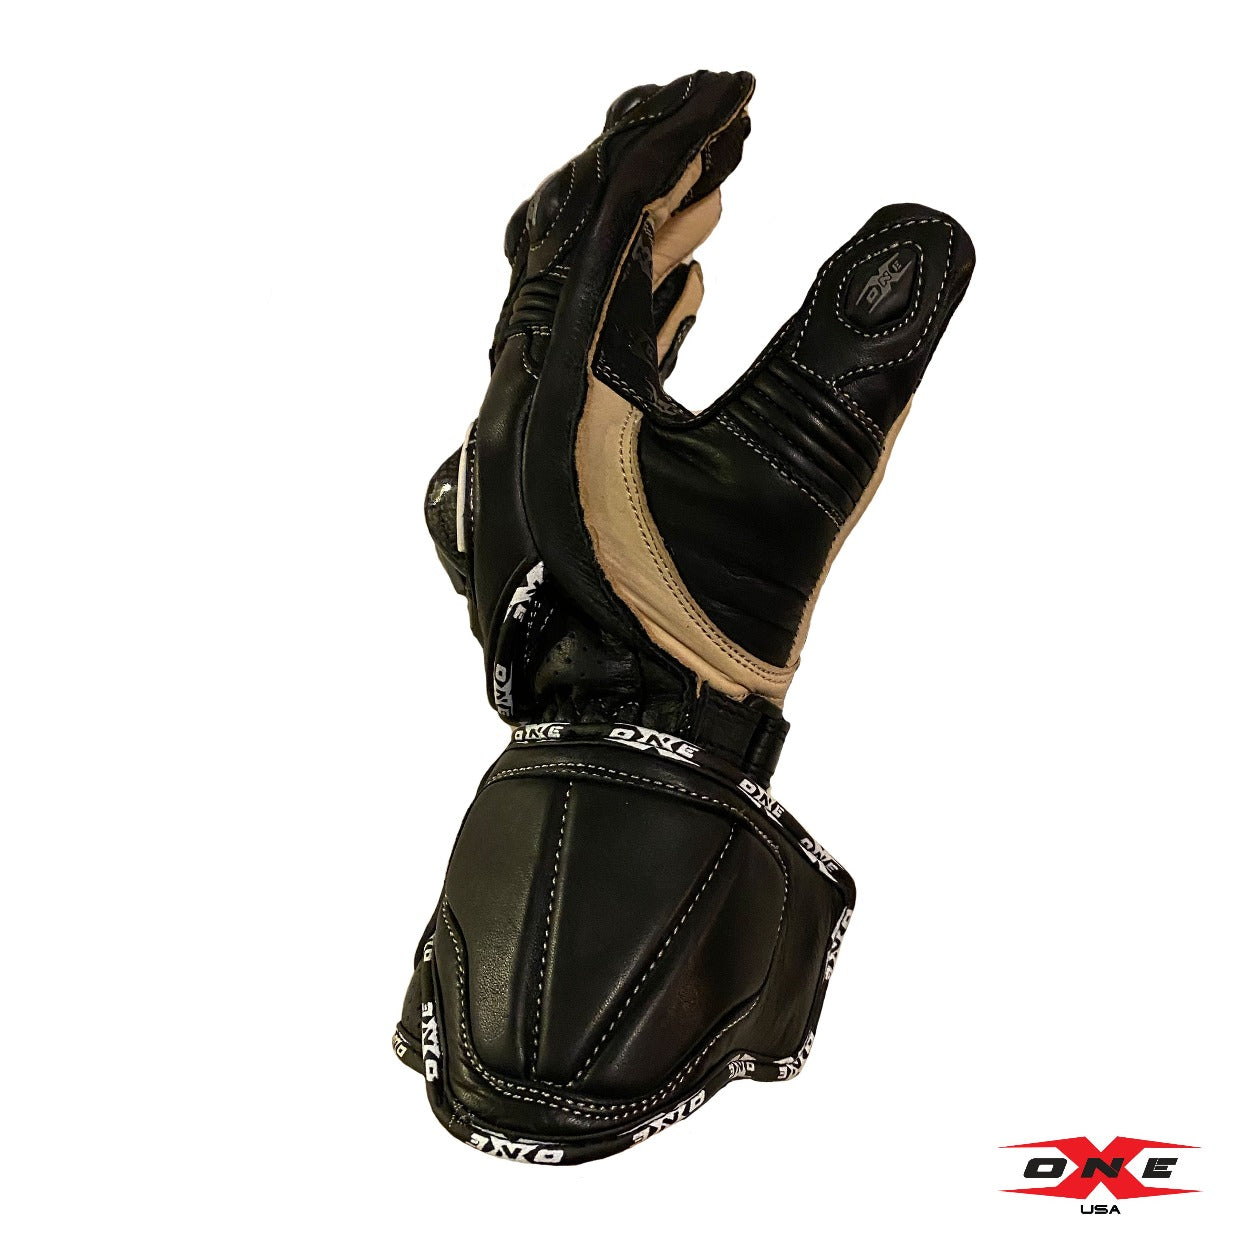 OneX USA Pro Race Gloves - Black